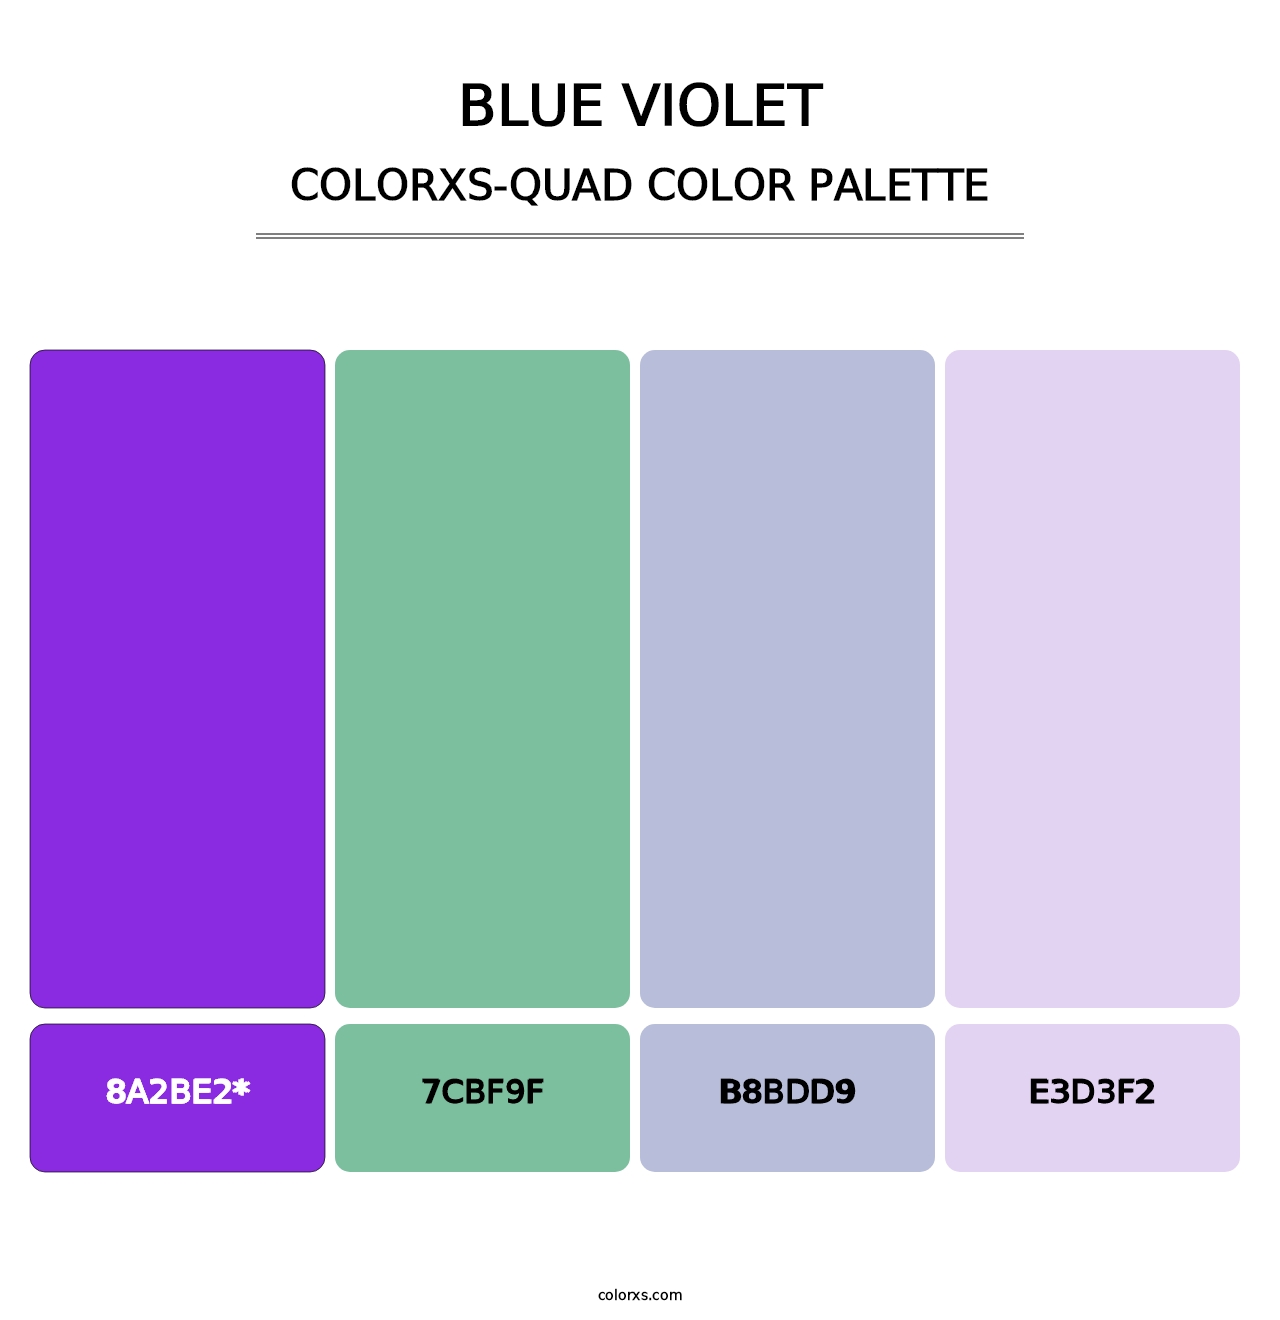 Blue Violet - Colorxs Quad Palette